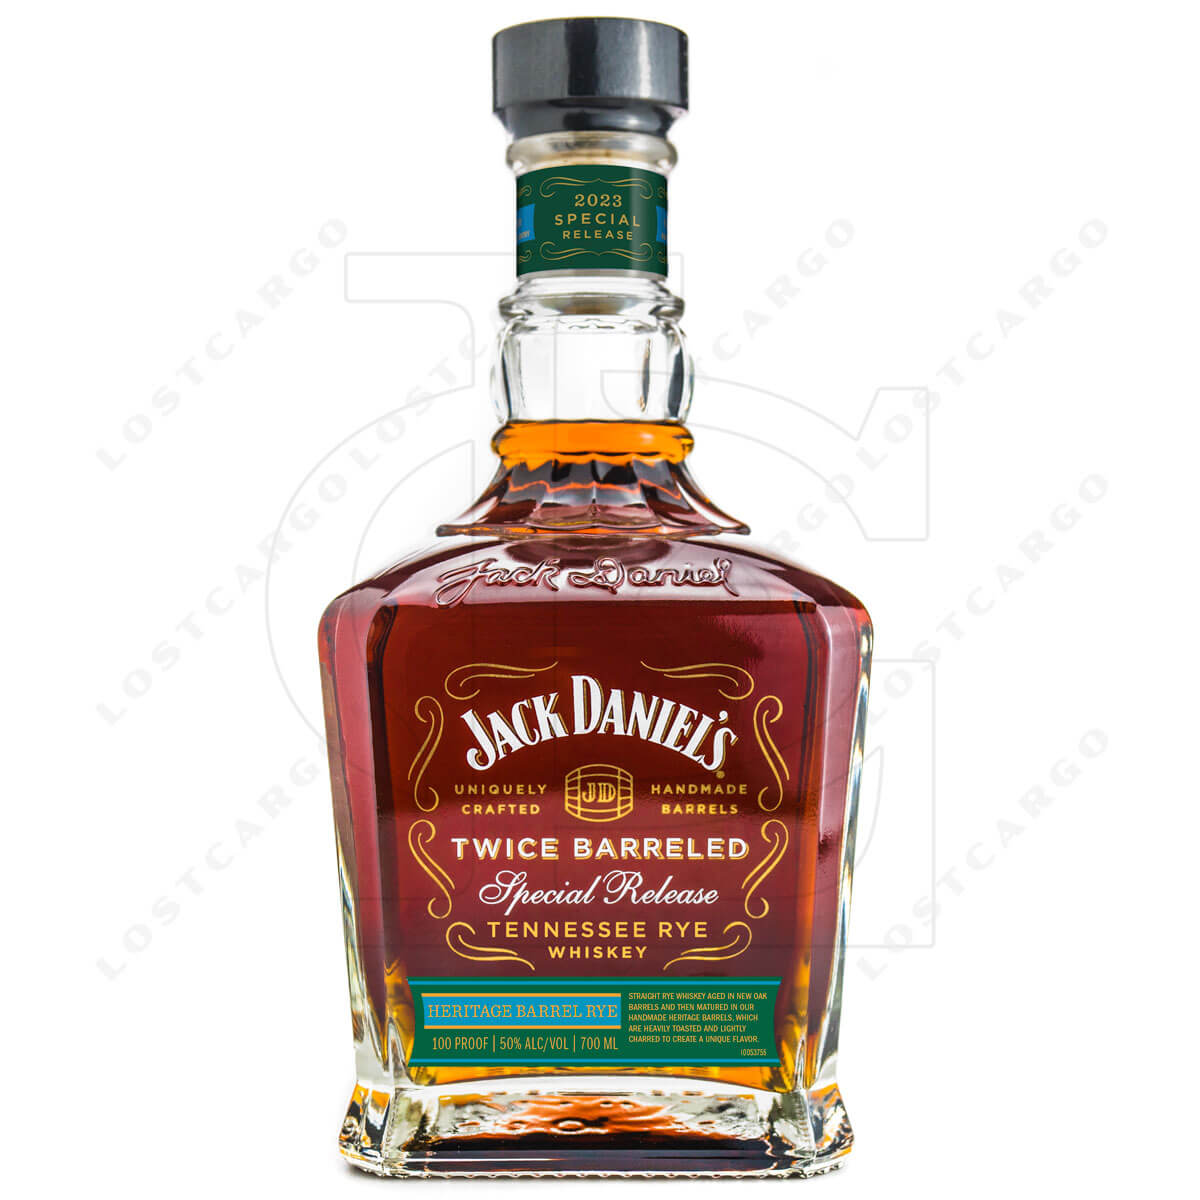 Jack Daniel's Twice Barreled Special Release Heritage Barrel Rye